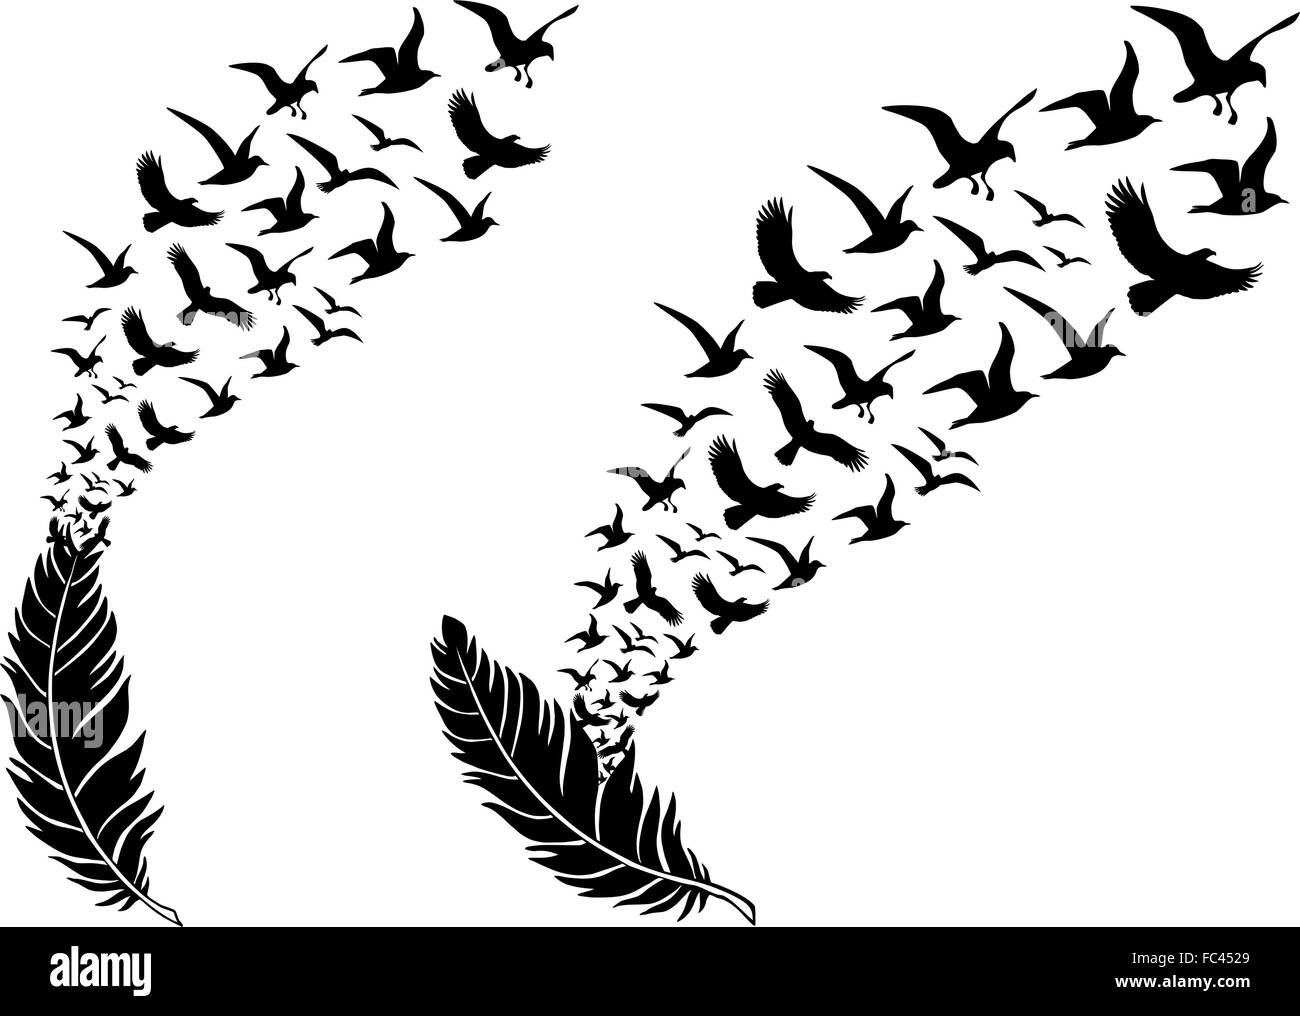 Piume con il volo libero uccelli, illustrazione vettoriale per un tatuaggio di parete Illustrazione Vettoriale